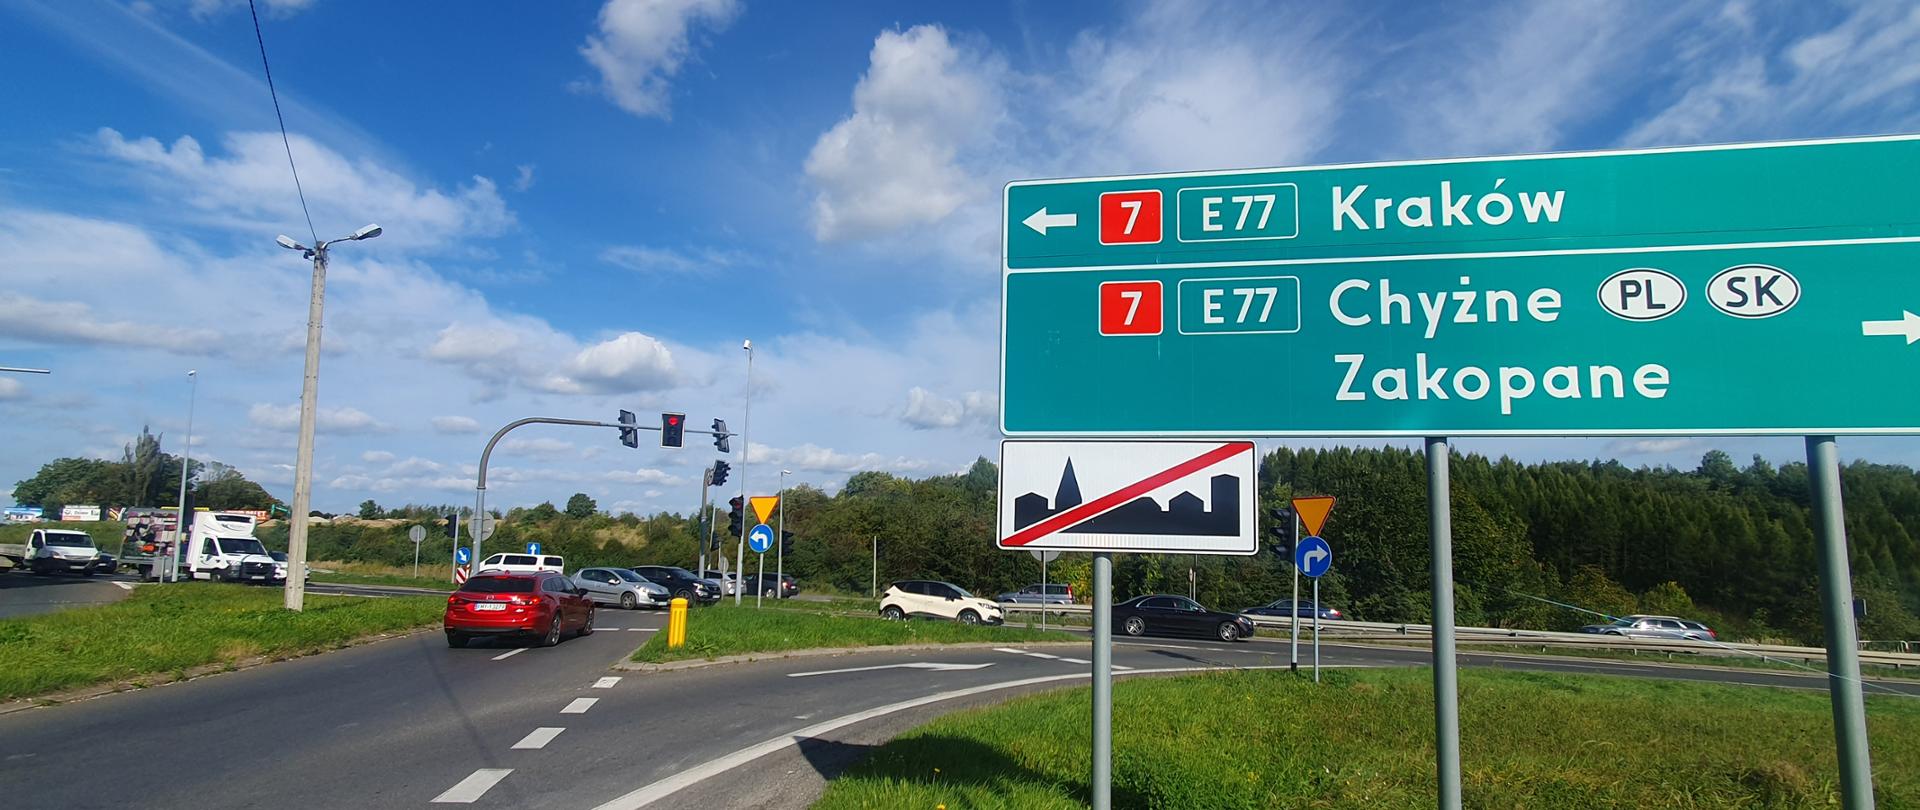 Zdjęcie lokalizacji przyszłego węzła w Myślenicach. Skrzyżowanie z widoczną tablicą wskazującą kierunki na Kraków (strzałka w lewo), na Chyżne i Zakopane (strzałka w prawo). Pod tablicą, znak: koniec terenu zabudowanego. 